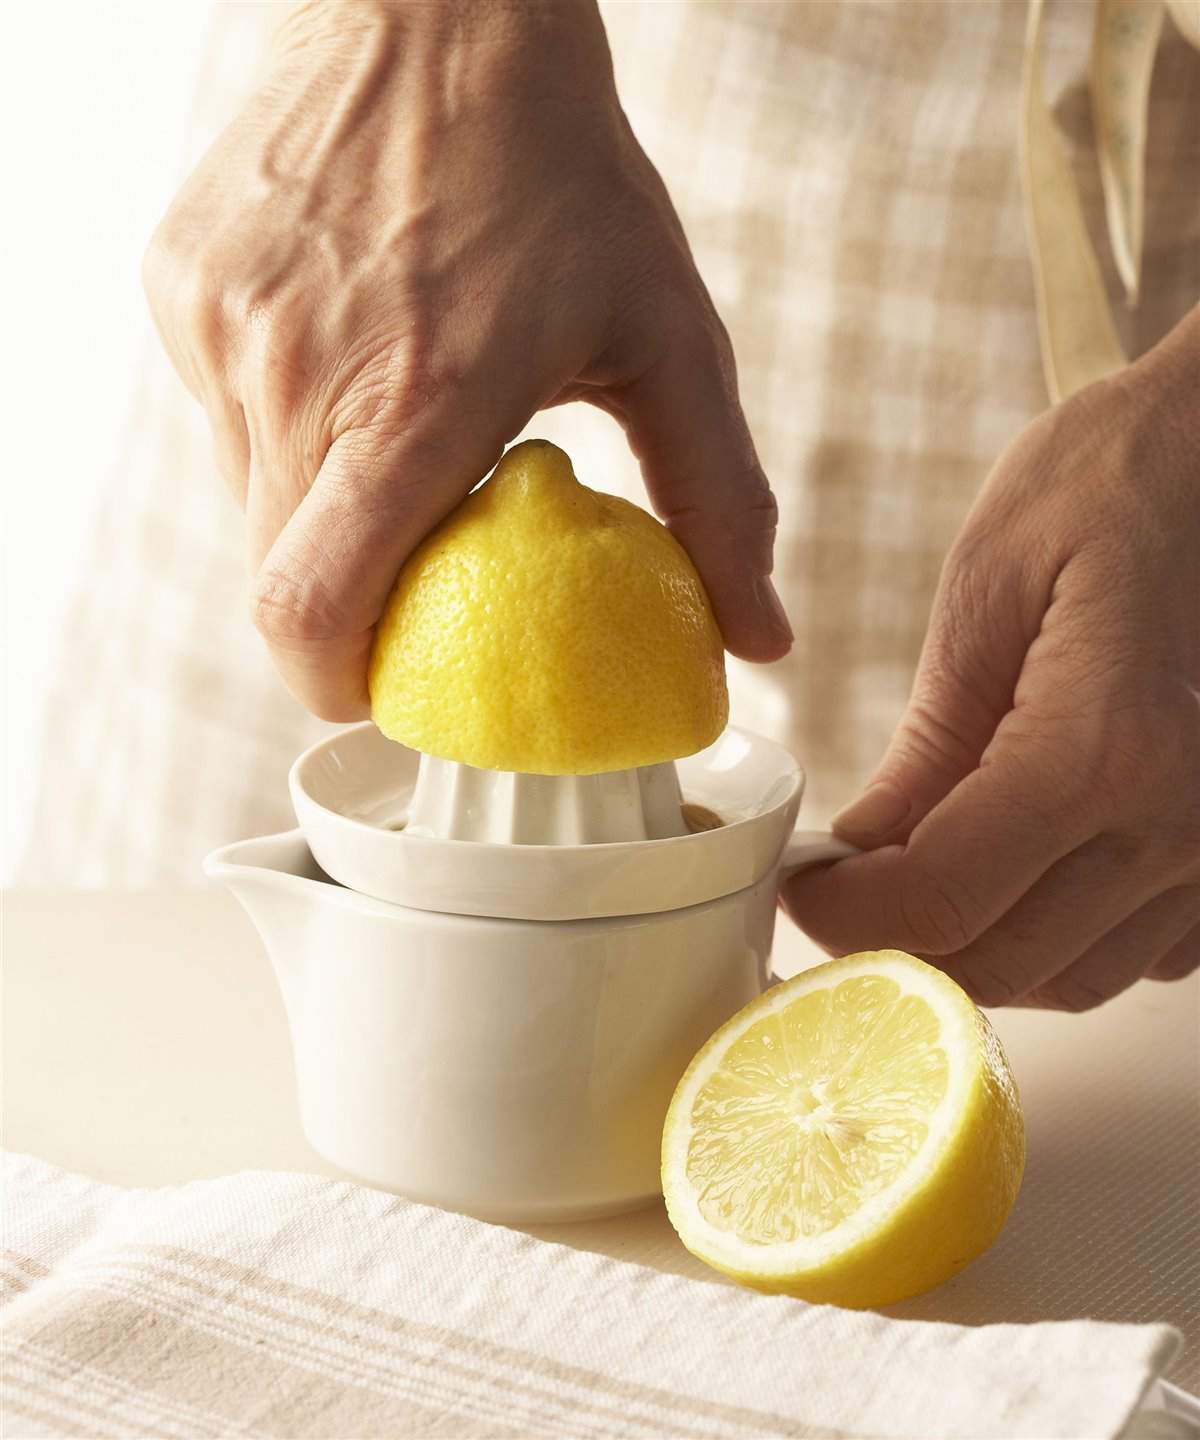 1. Exprime el limón